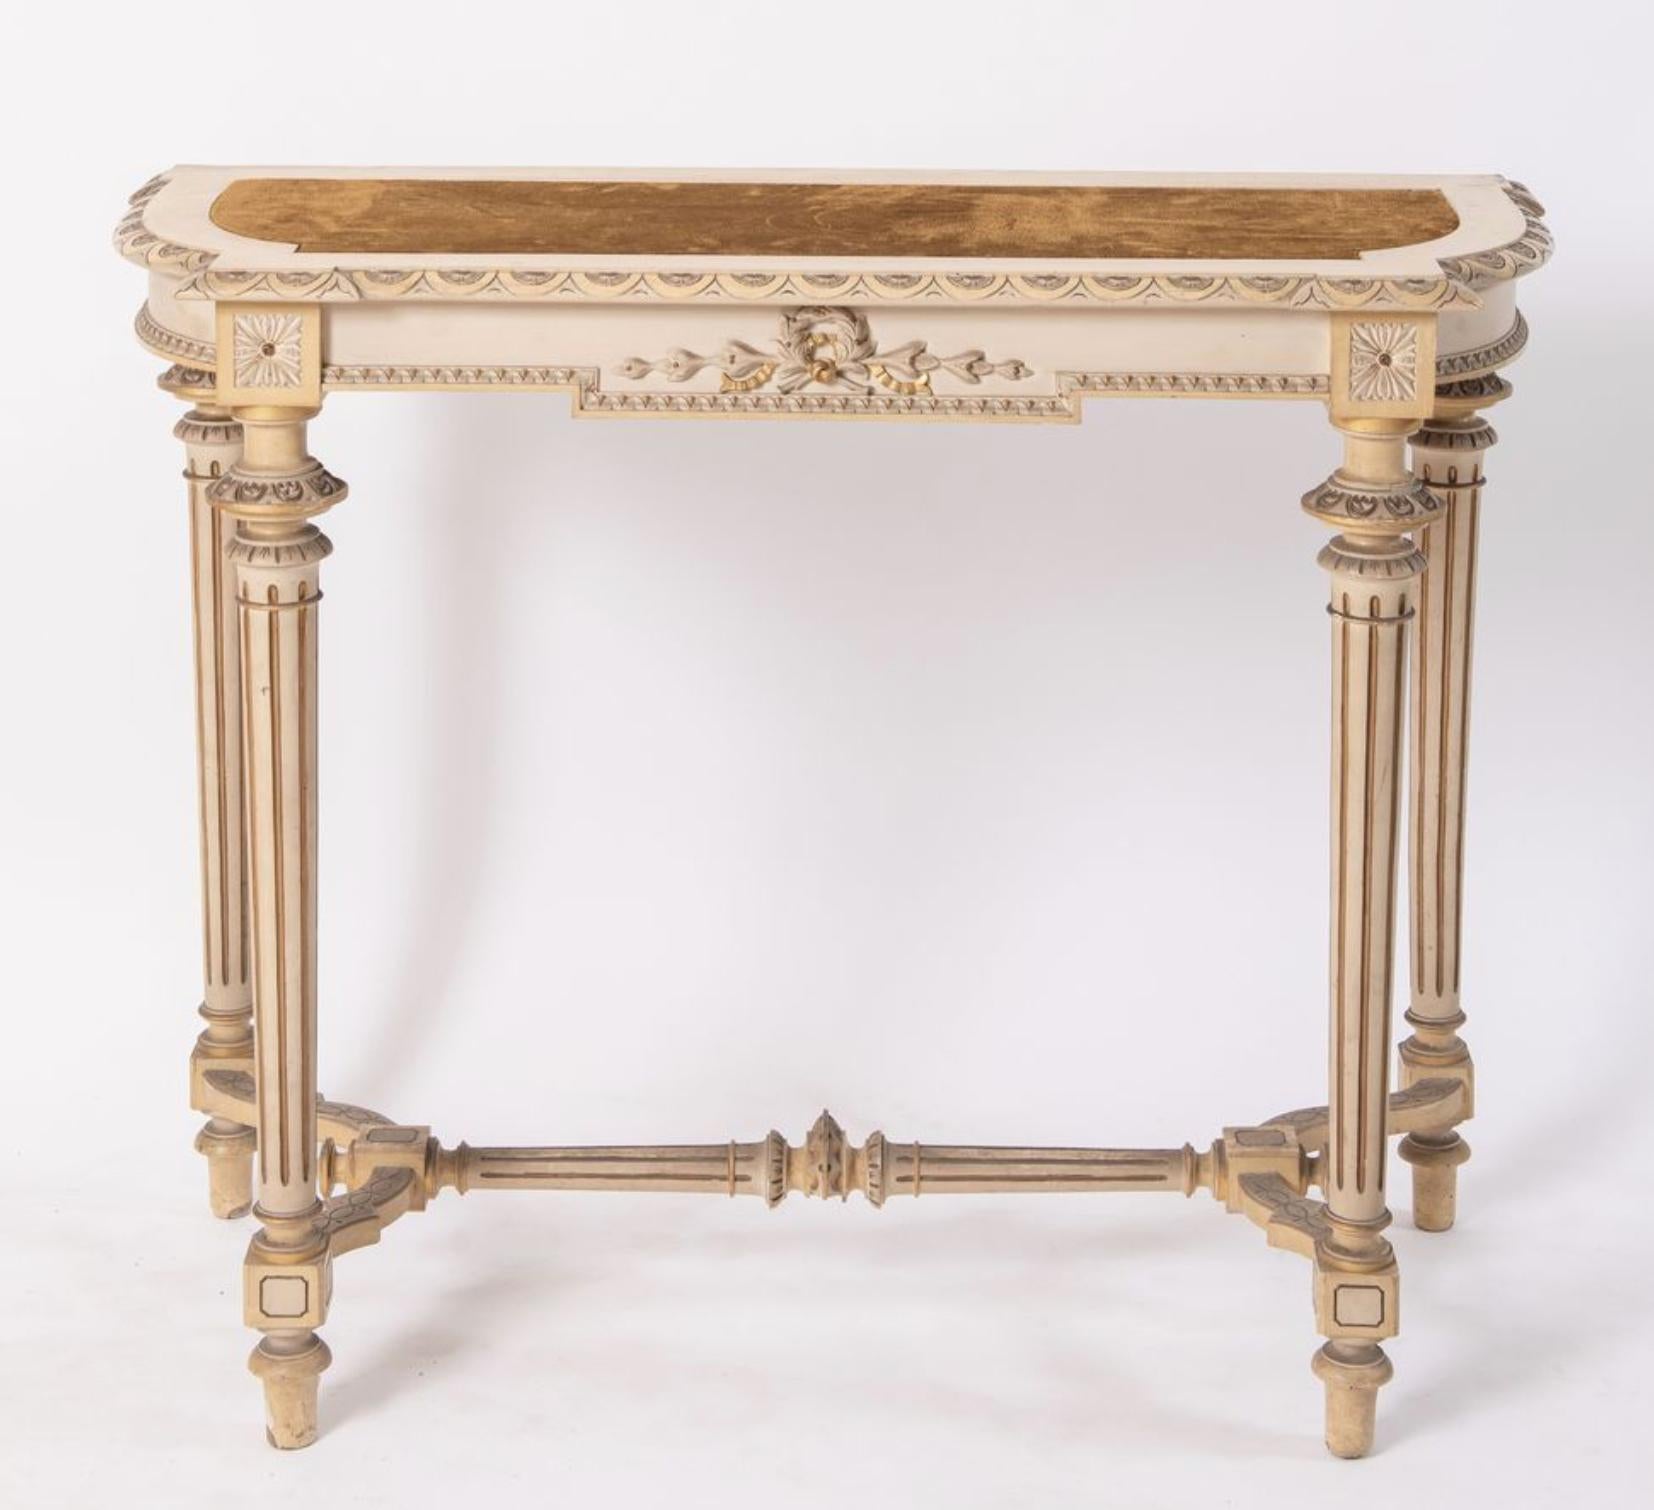 Console en bois français peint à la main avec plateau en velours cognac. La table est sculptée à la main avec des détails typiques du style Louise XVI comme les rubans en bois doré à l'avant et les pieds cannelés reliés à la base. Tous les détails